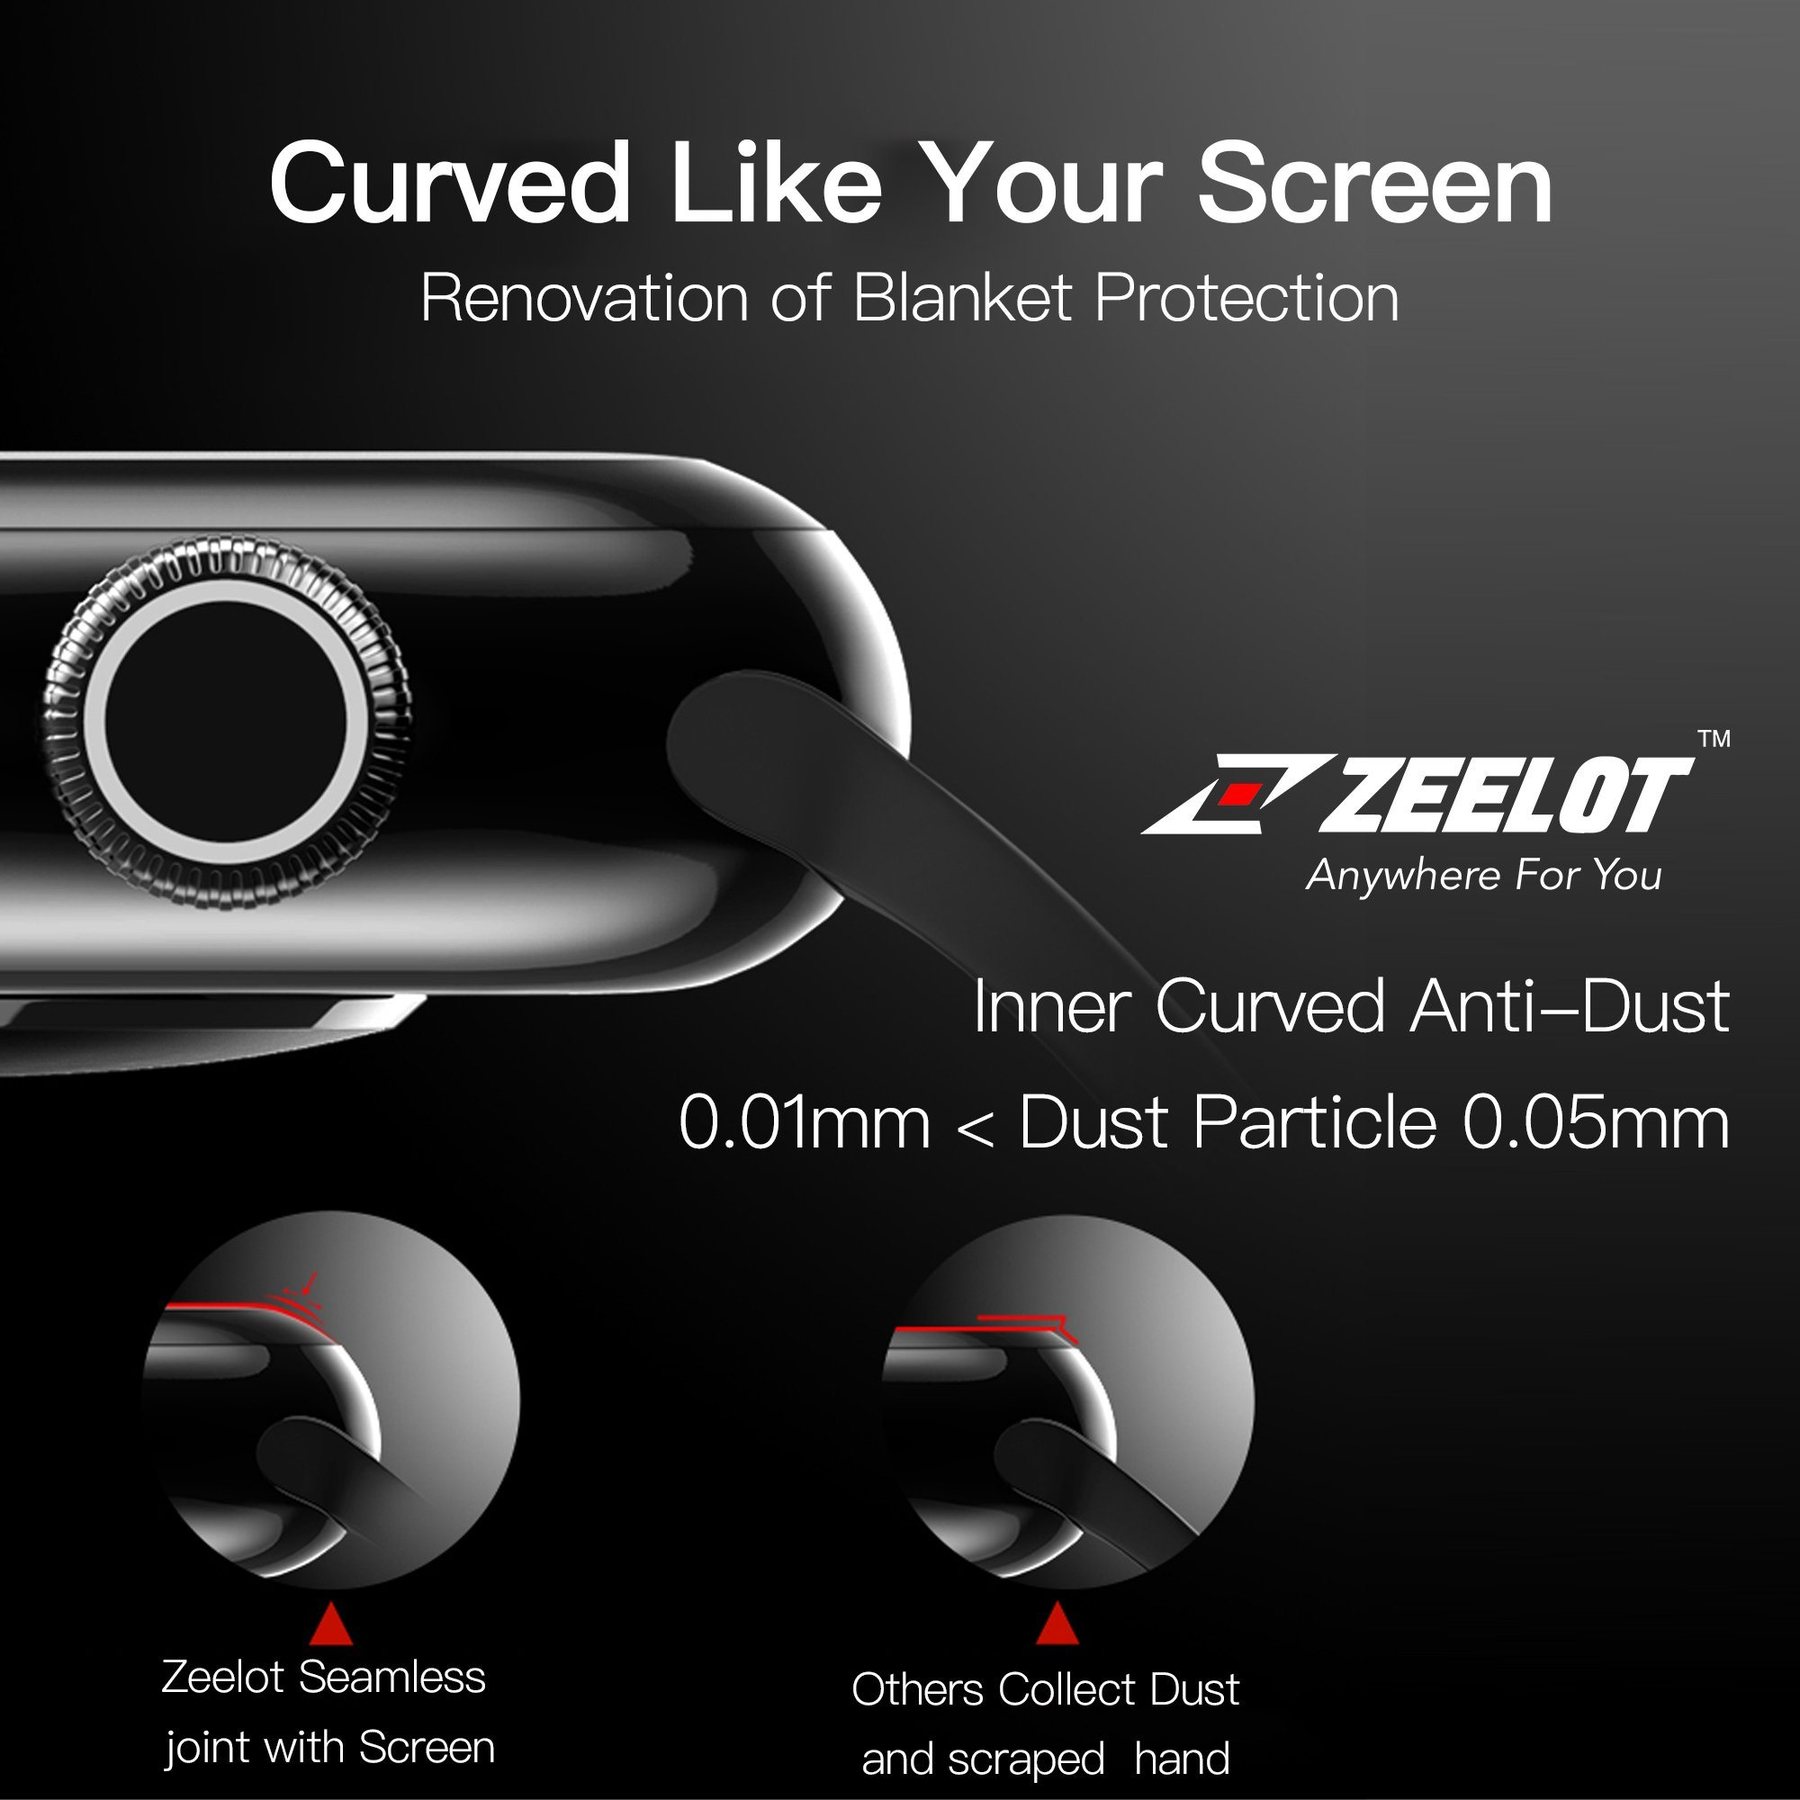 Cường Lực Zeelot Apple Watch 40mm - Hàng Chính Hãng